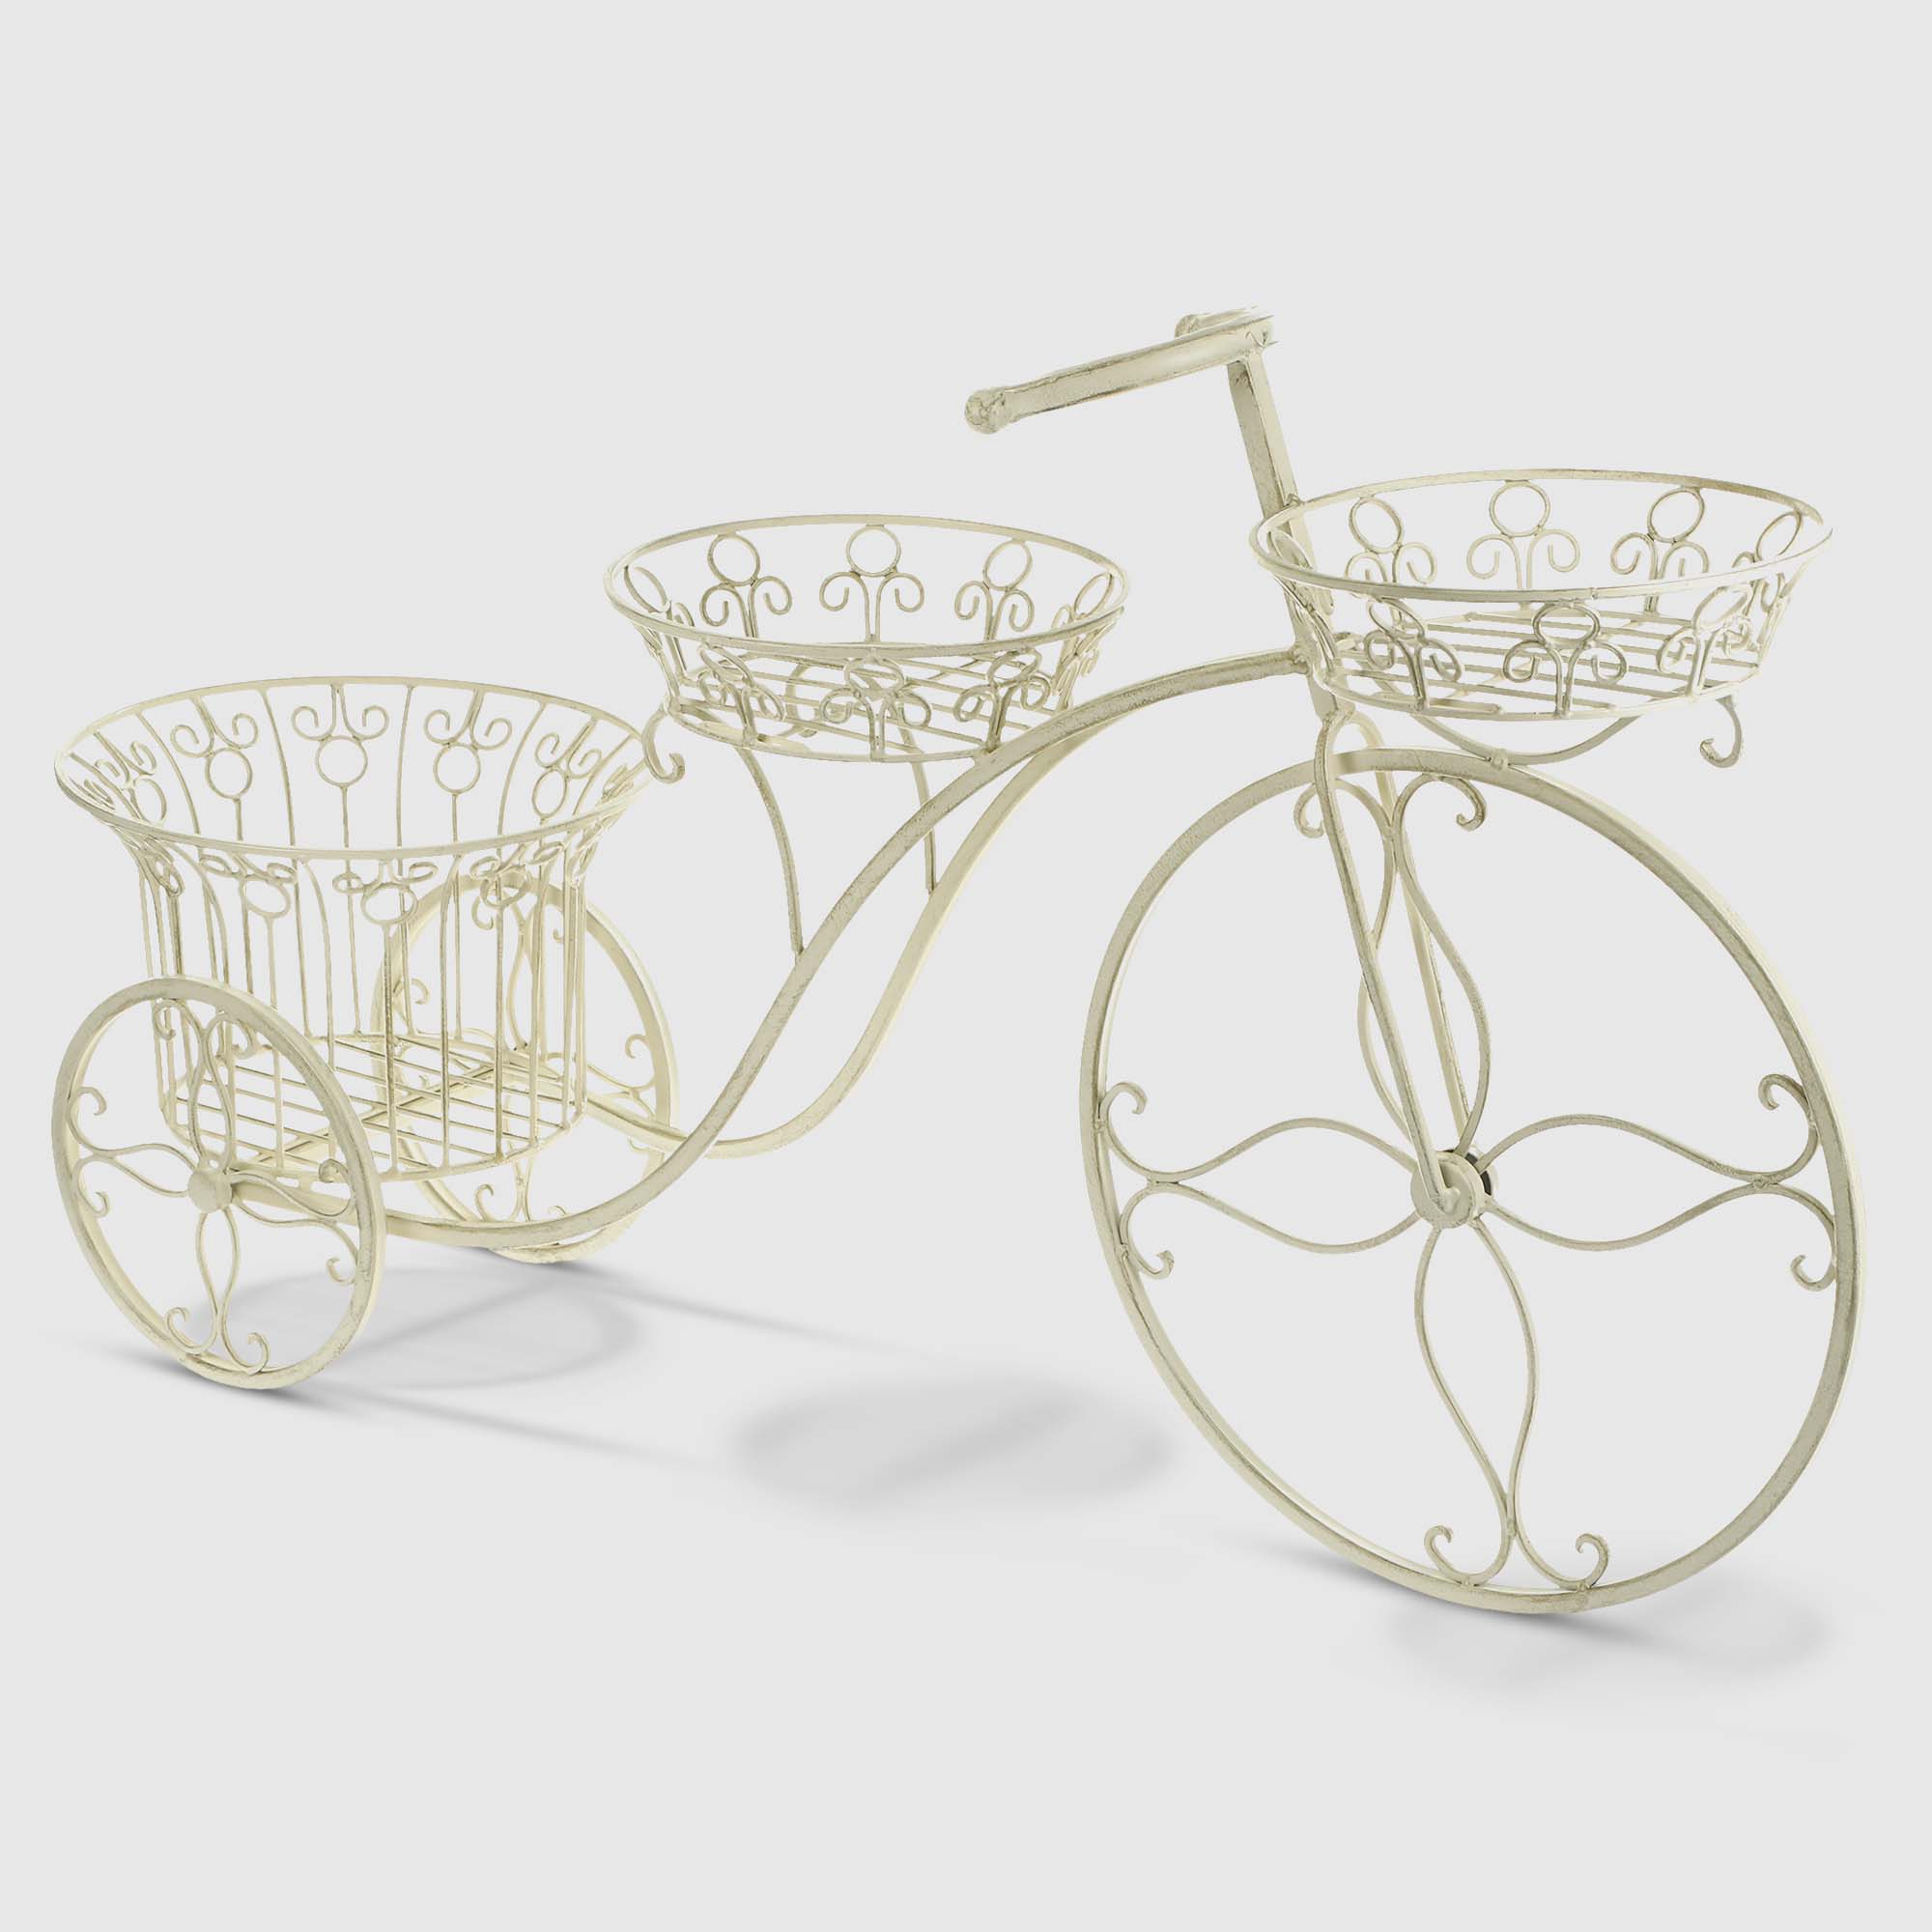 Подставка для цветов Anxi jiacheng велосипед, 95х53х27 см Белая подставка для ов велосипед 775x945x370 мм